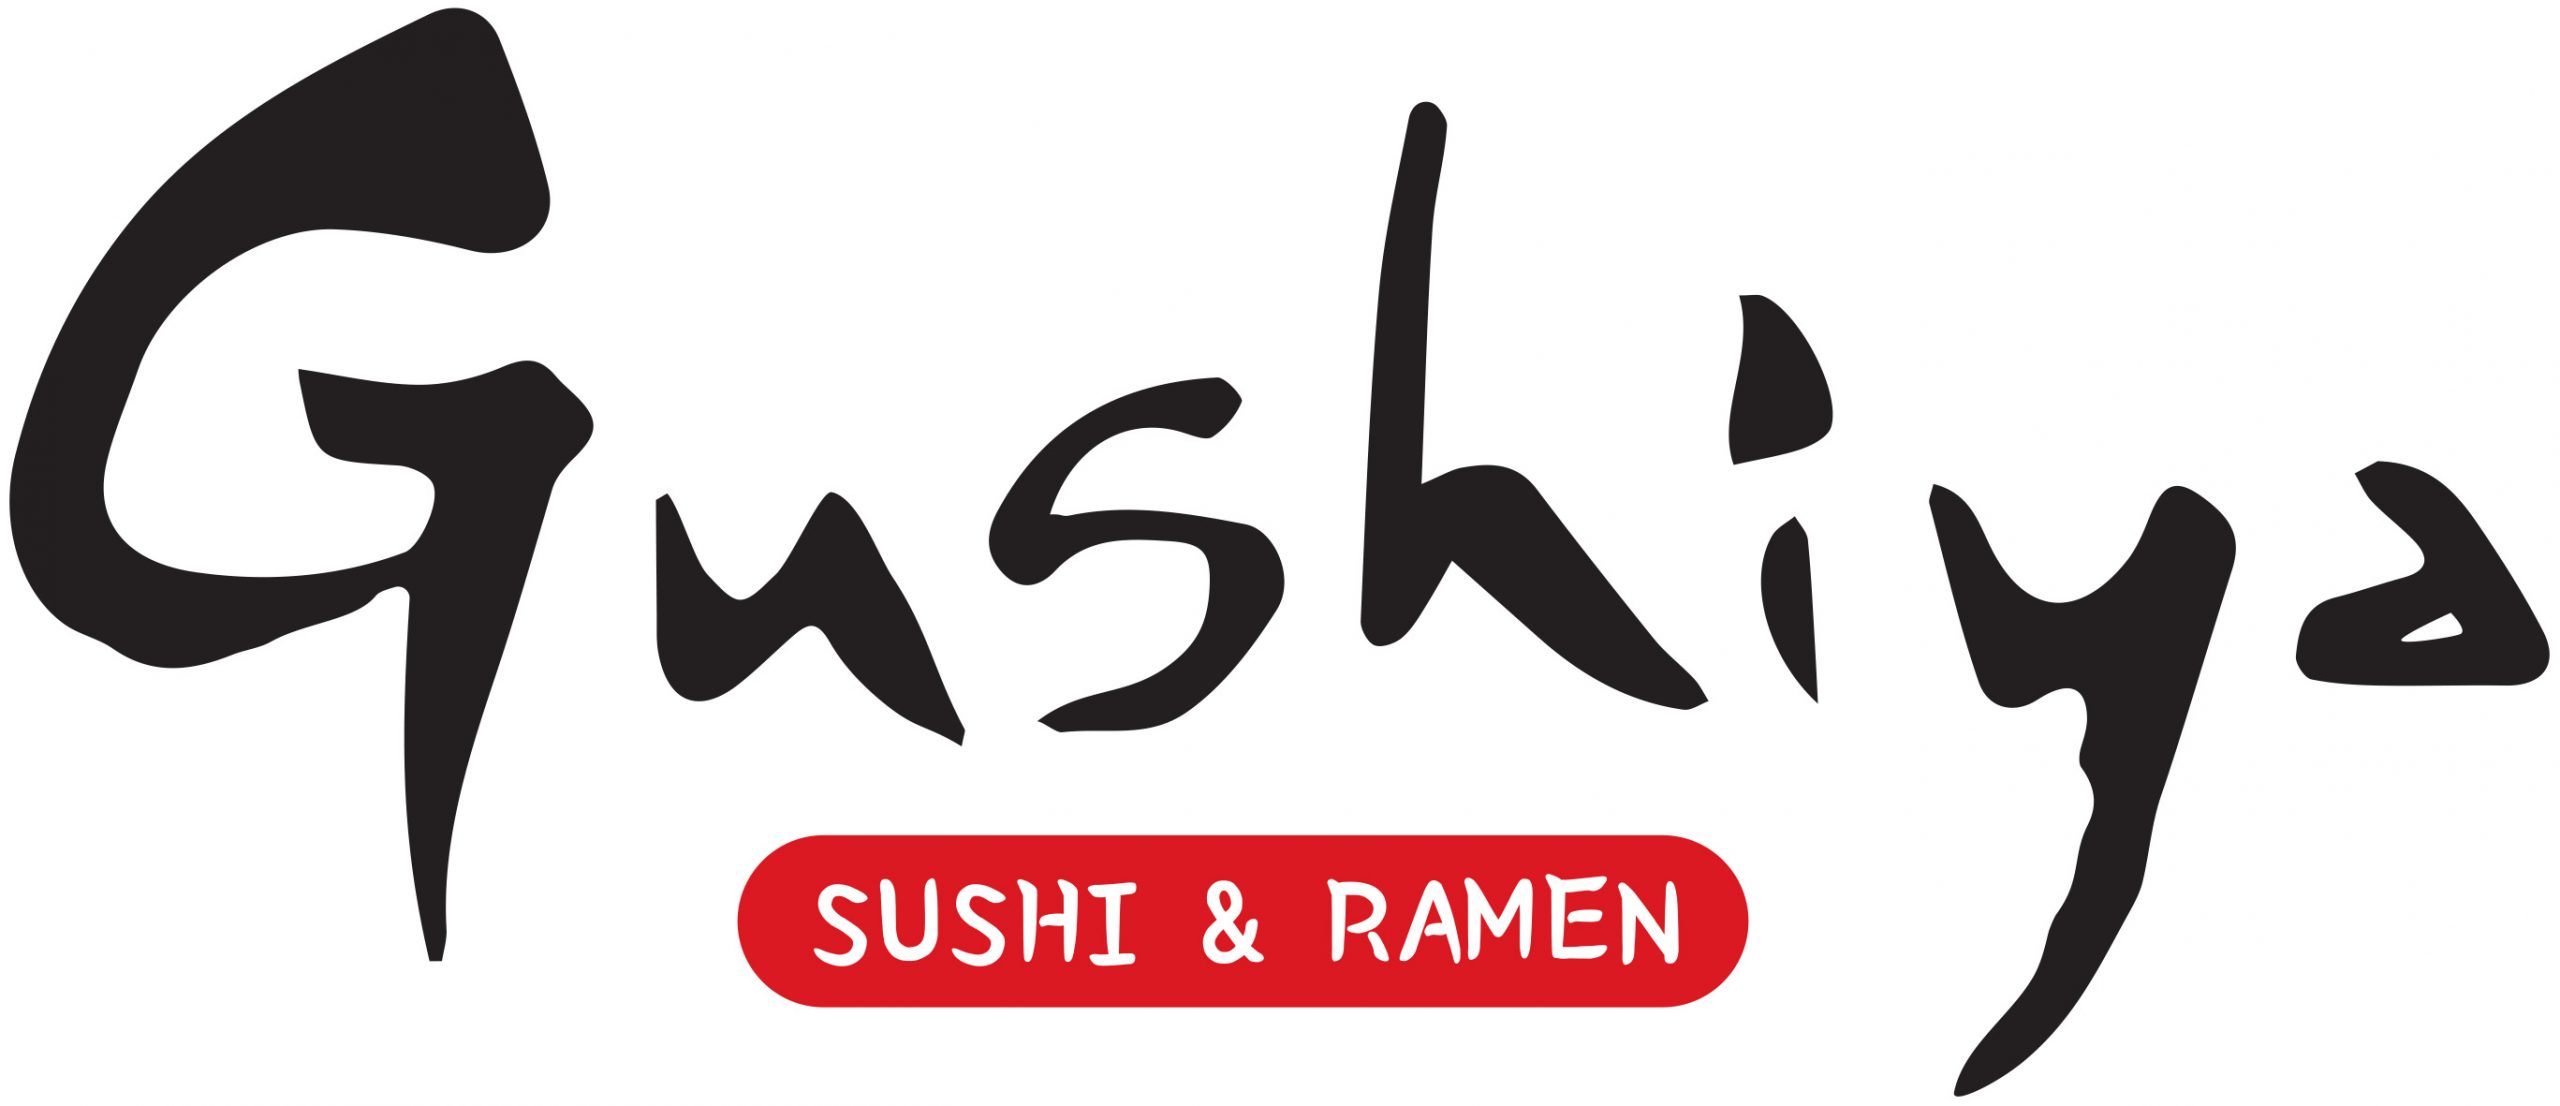 Gushiya Sushi & Ramen